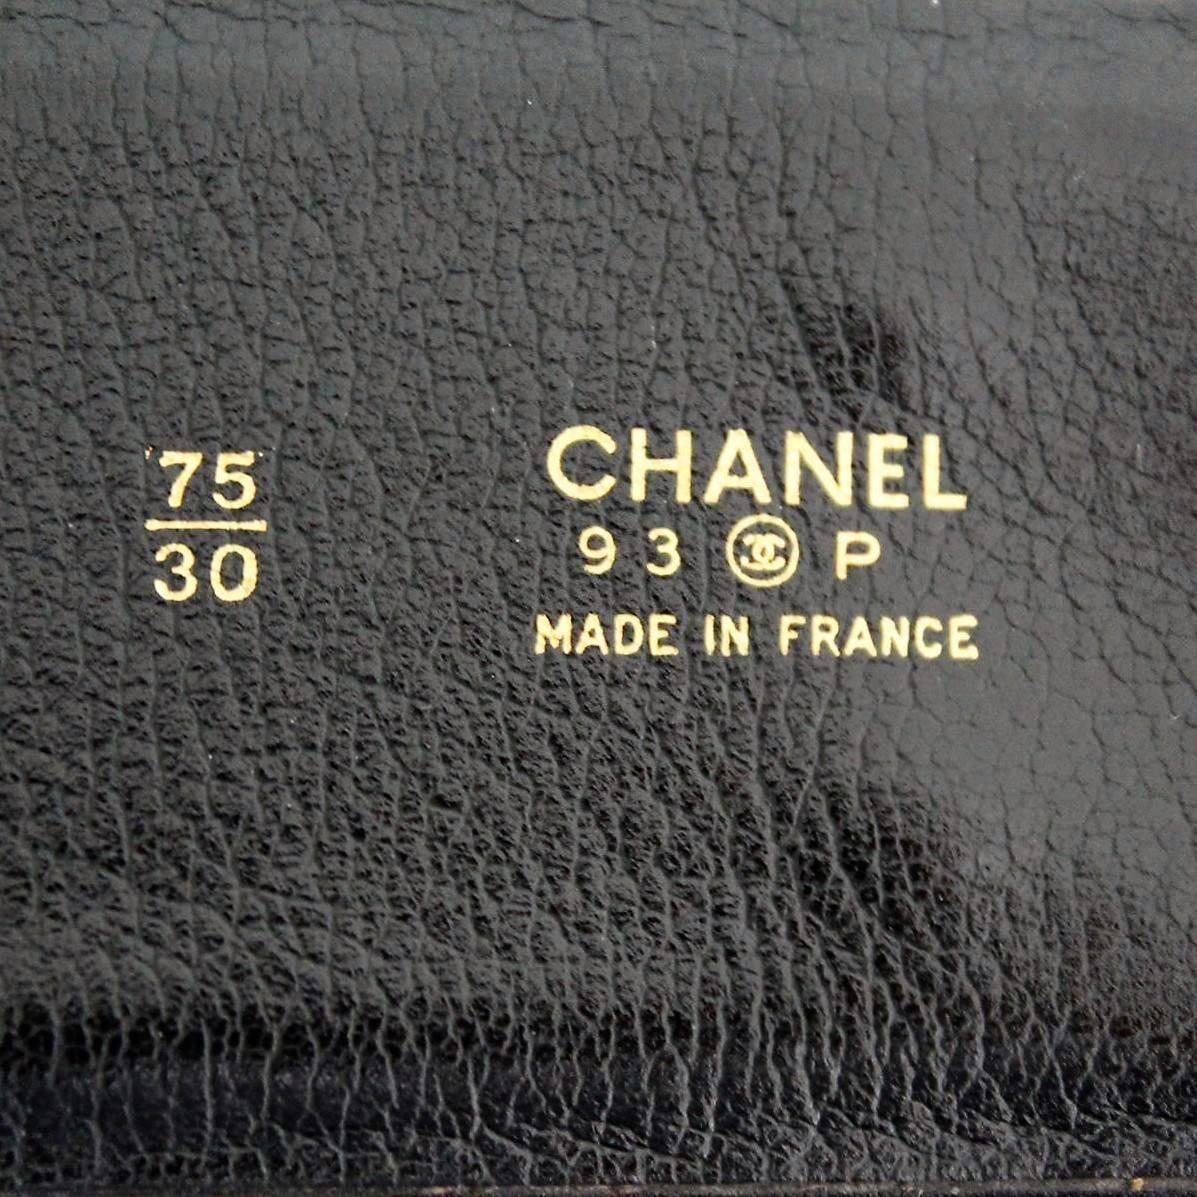 1985 Chanel Vintage Limited Edition Belt 1